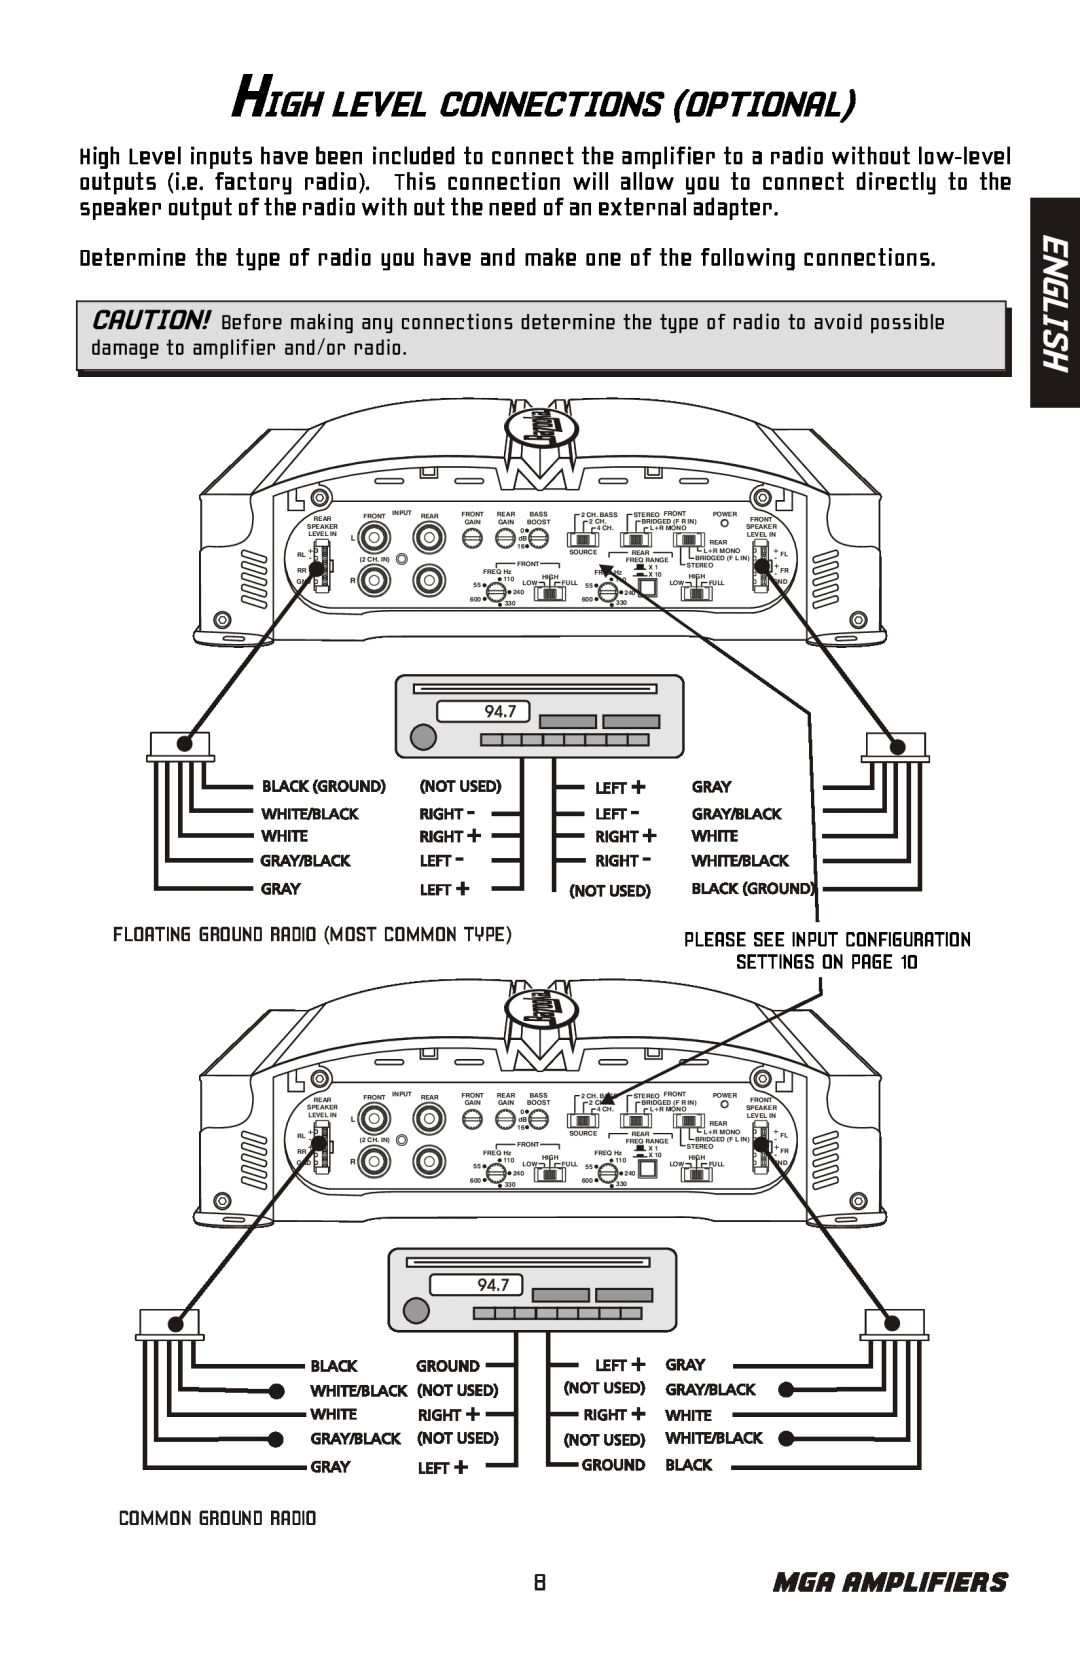 Bazooka MGA4150 manual High Level Connections Optional, English, Mga Amplifiers, Settings On Page 